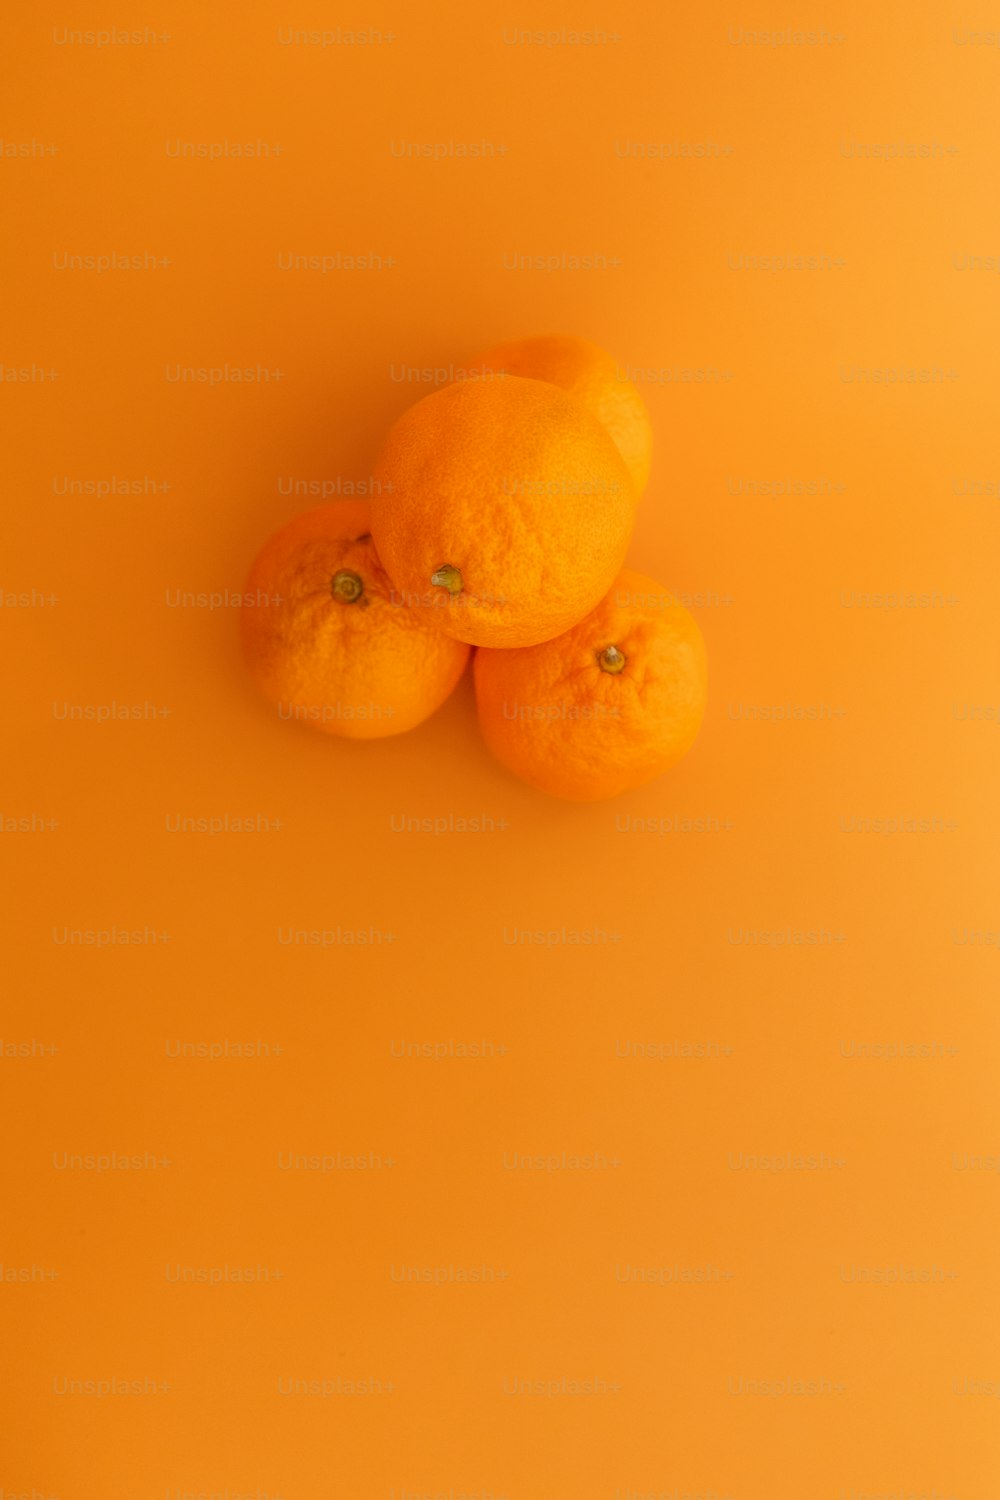 Tres naranjas sentadas encima de una superficie amarilla